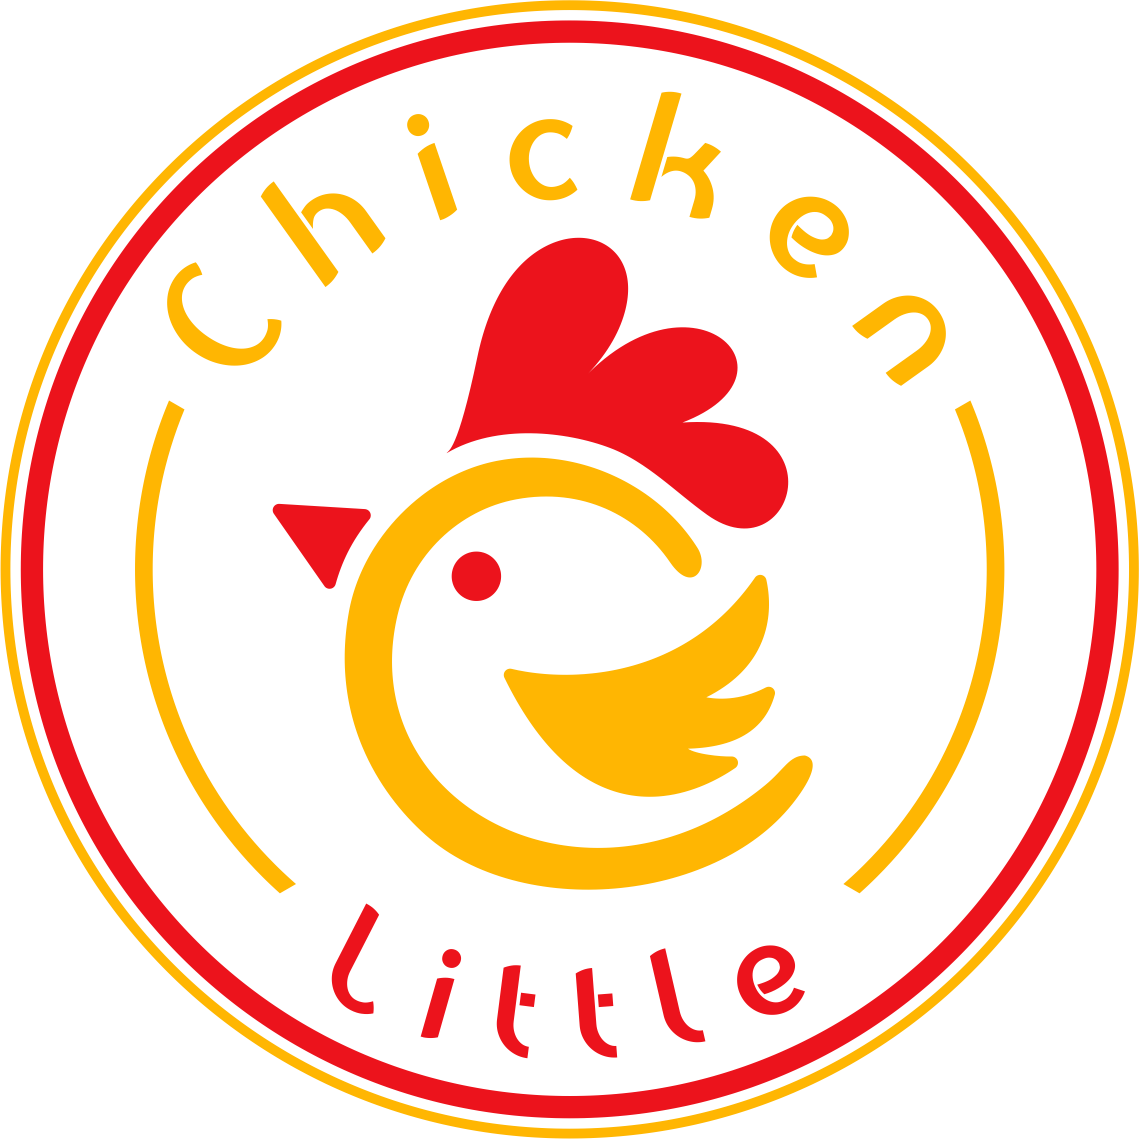 Chicken Little Resende